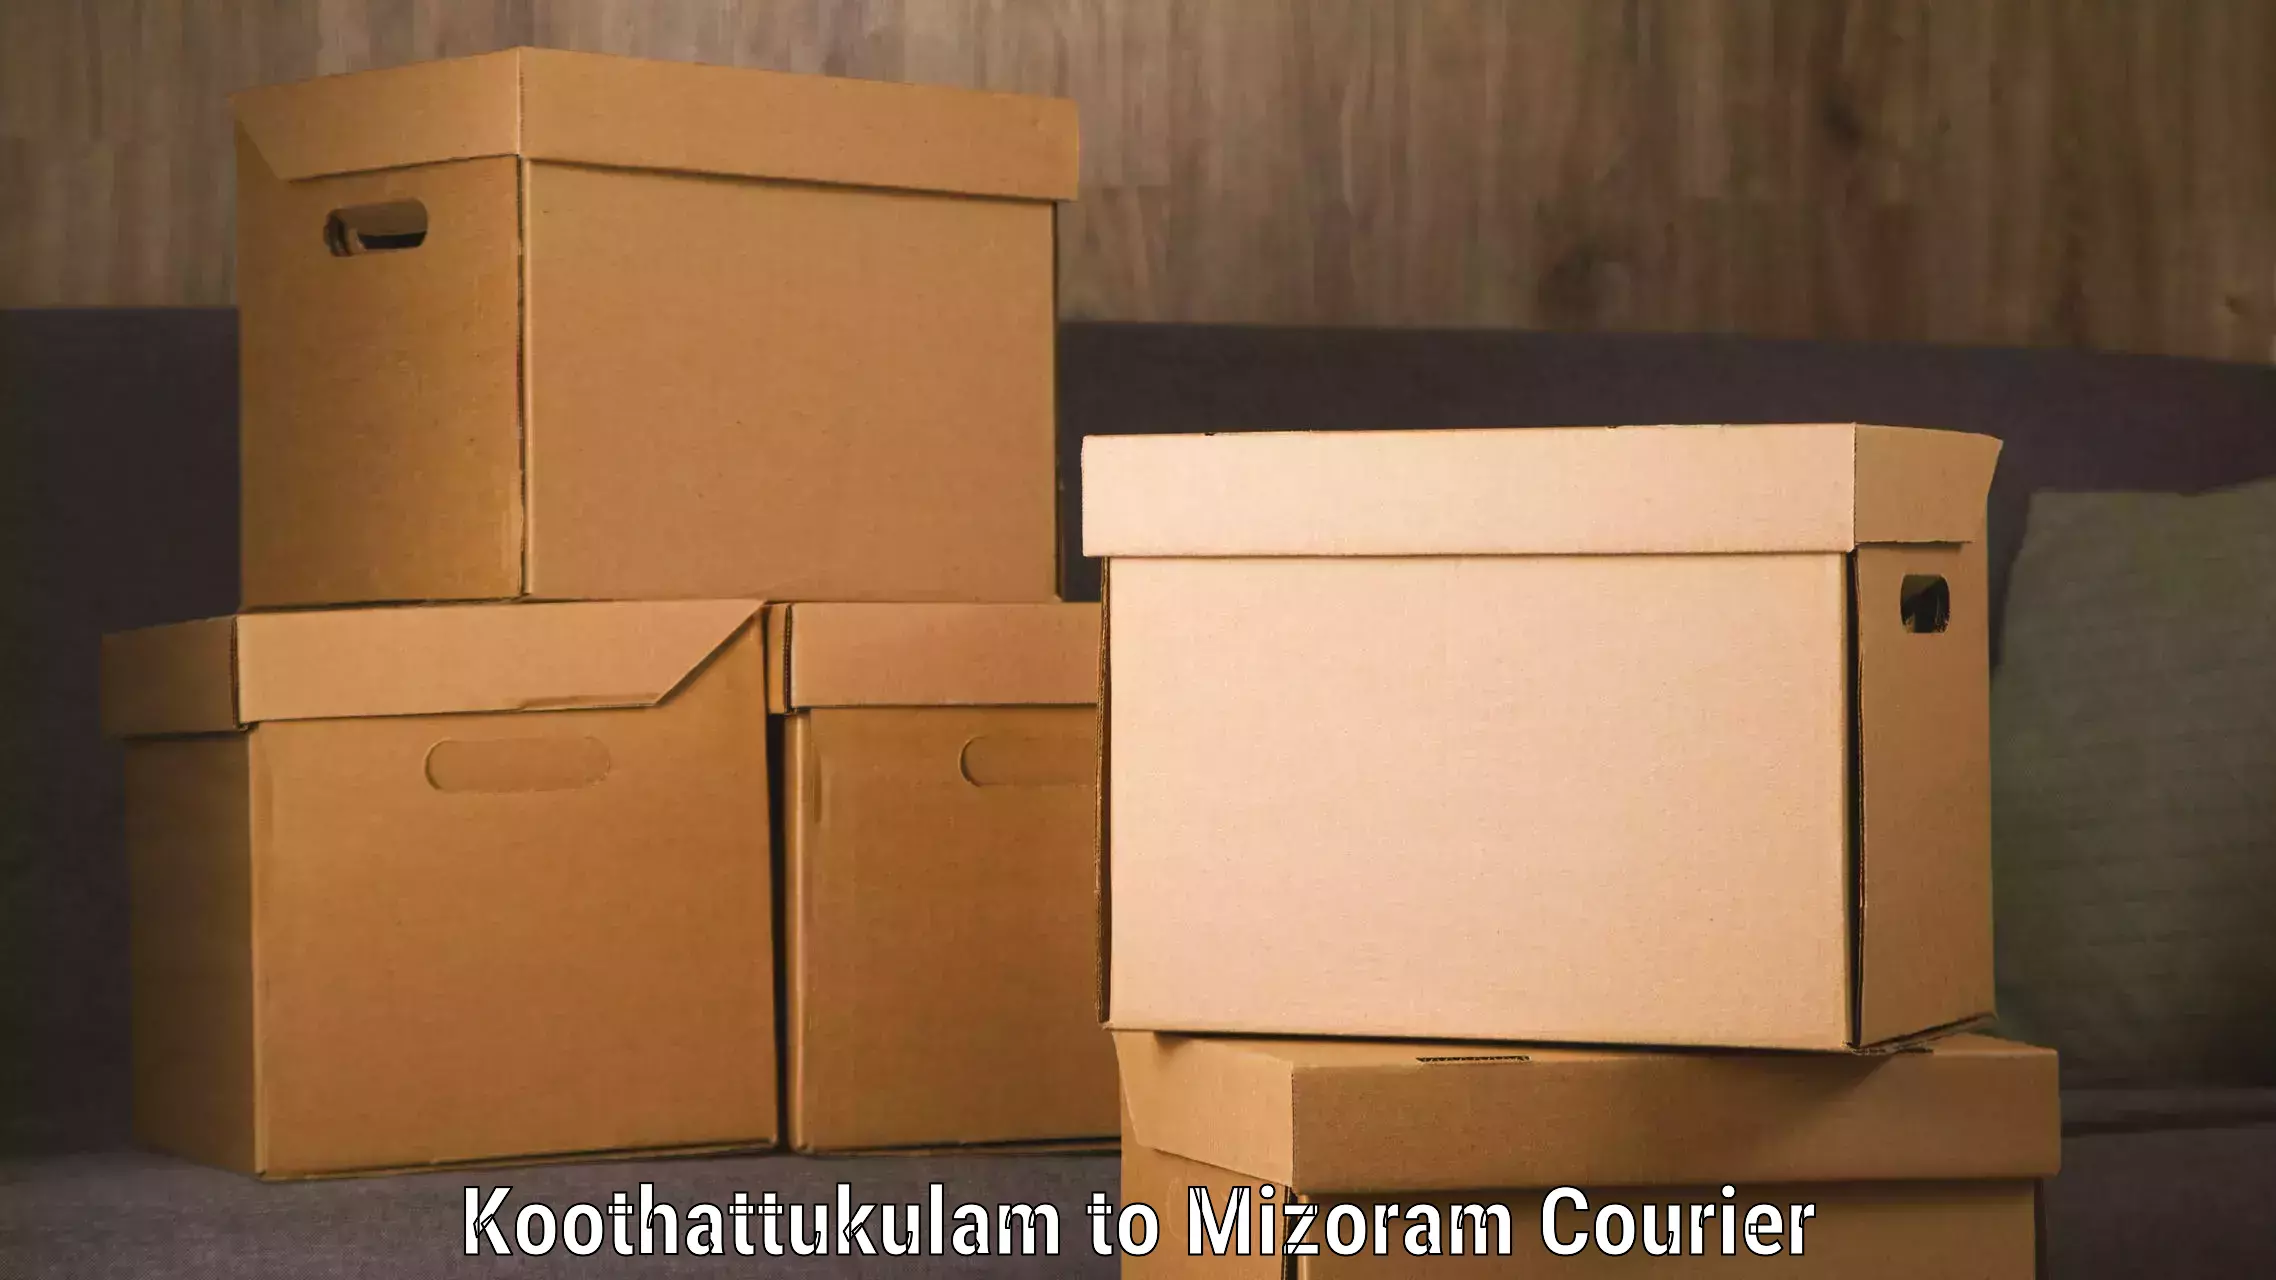 Reliable delivery network Koothattukulam to Saitual